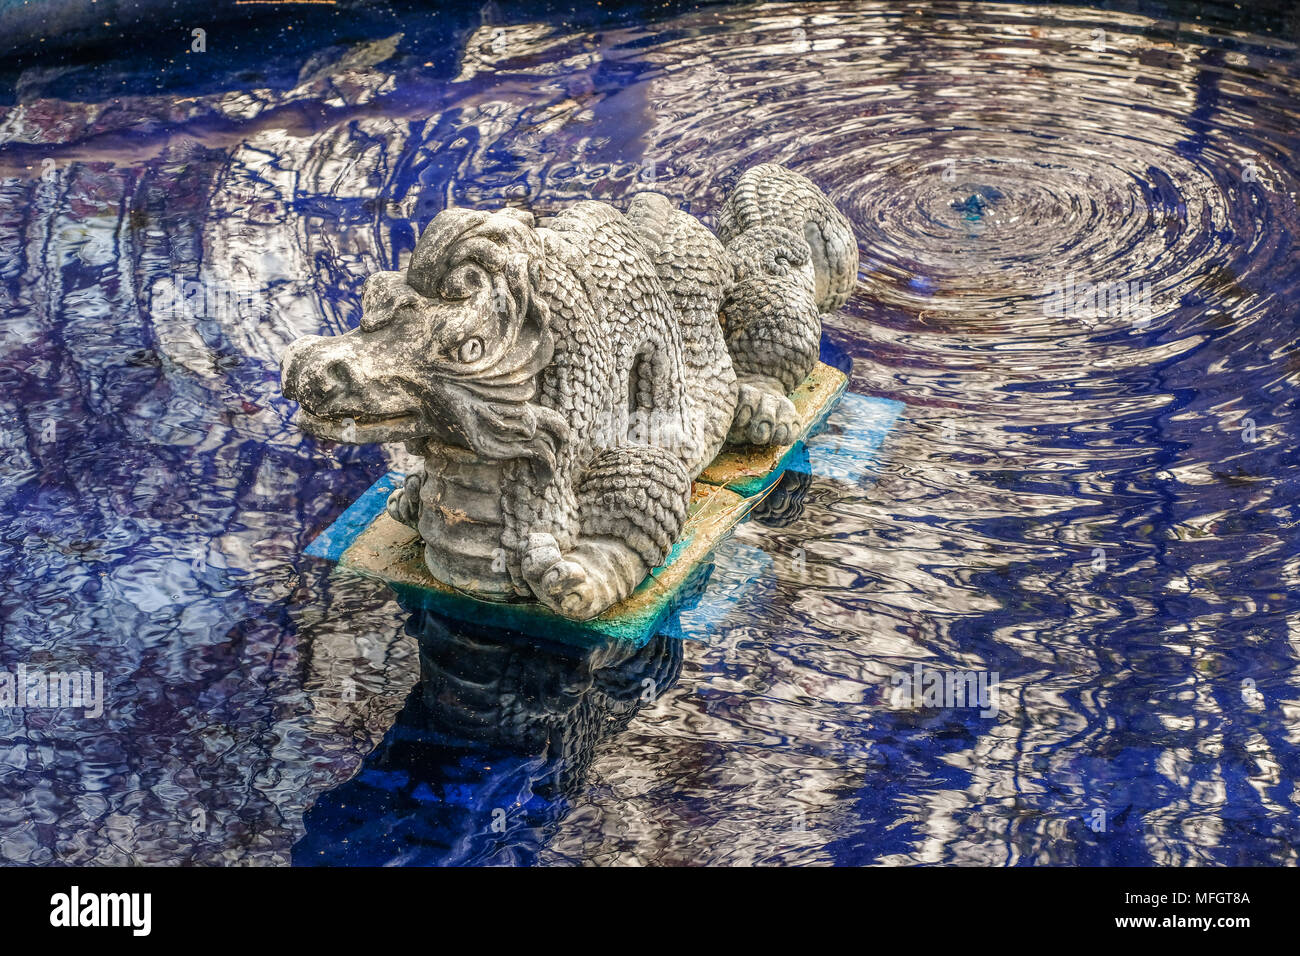 Stein Skulptur eines Drachen in einem öffentlichen Garten; der Drache sitzt in einem Teich mit blau gefärbten Wasser; Reflexionen auf Wasser Stockfoto